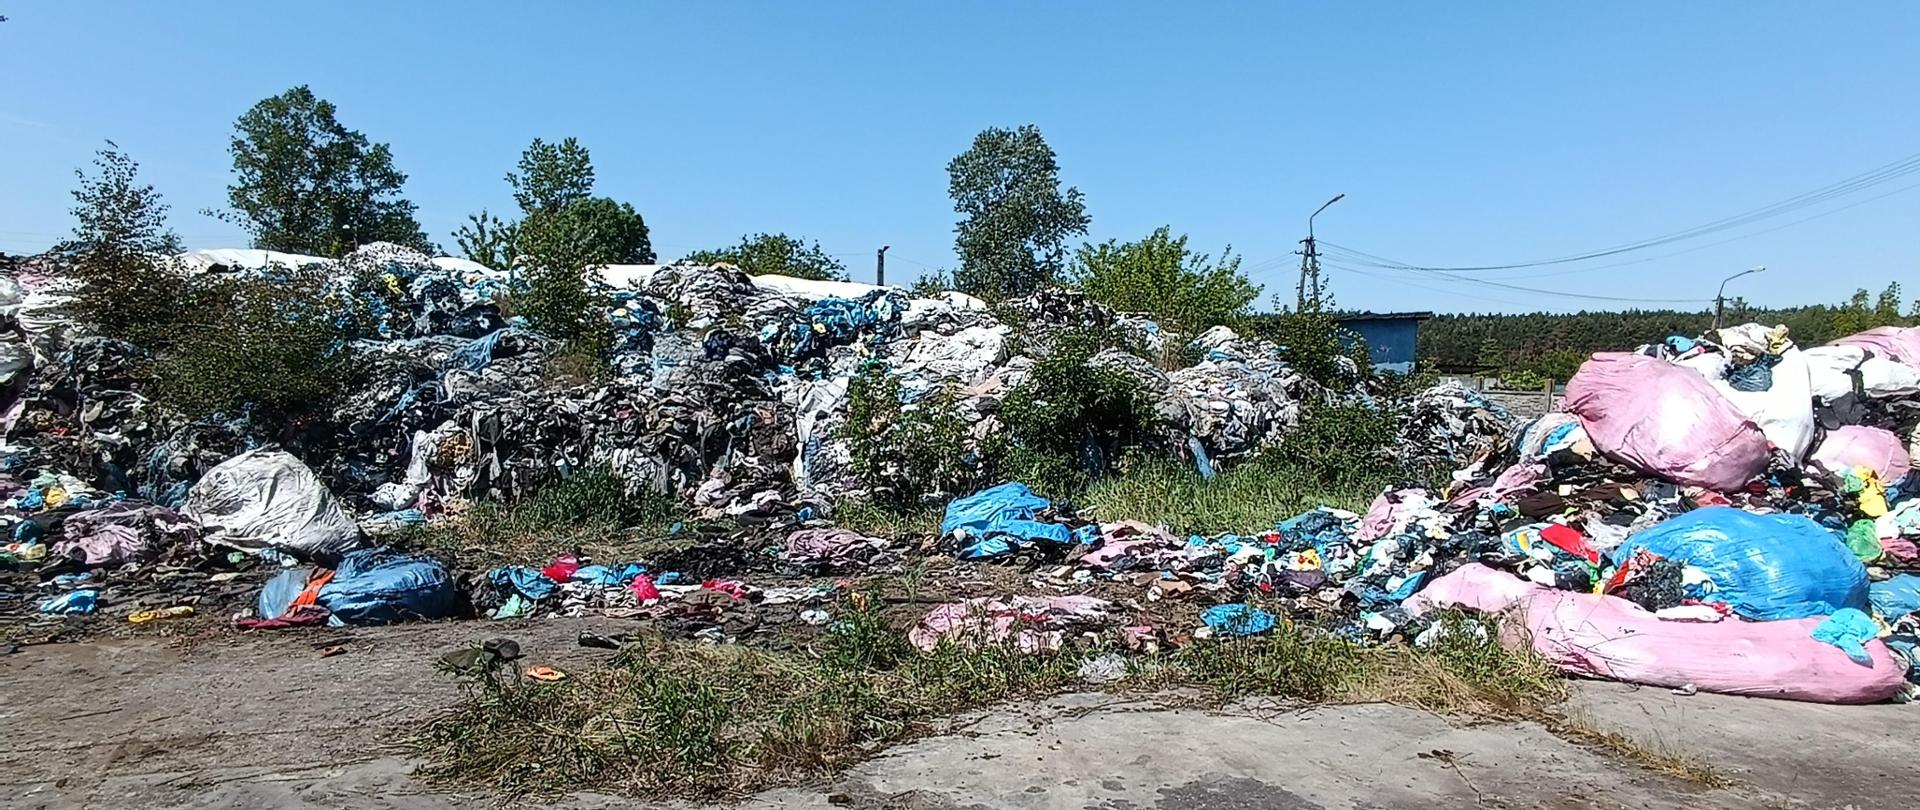 Pryzma częściowo spalonych odpadów komunalnych o powierzchni ok. 600 metrów kwadratowych znajduje się na nieutwardzonym podłożu. Po prawej stronie widać kolorowe torby plastikowe. 